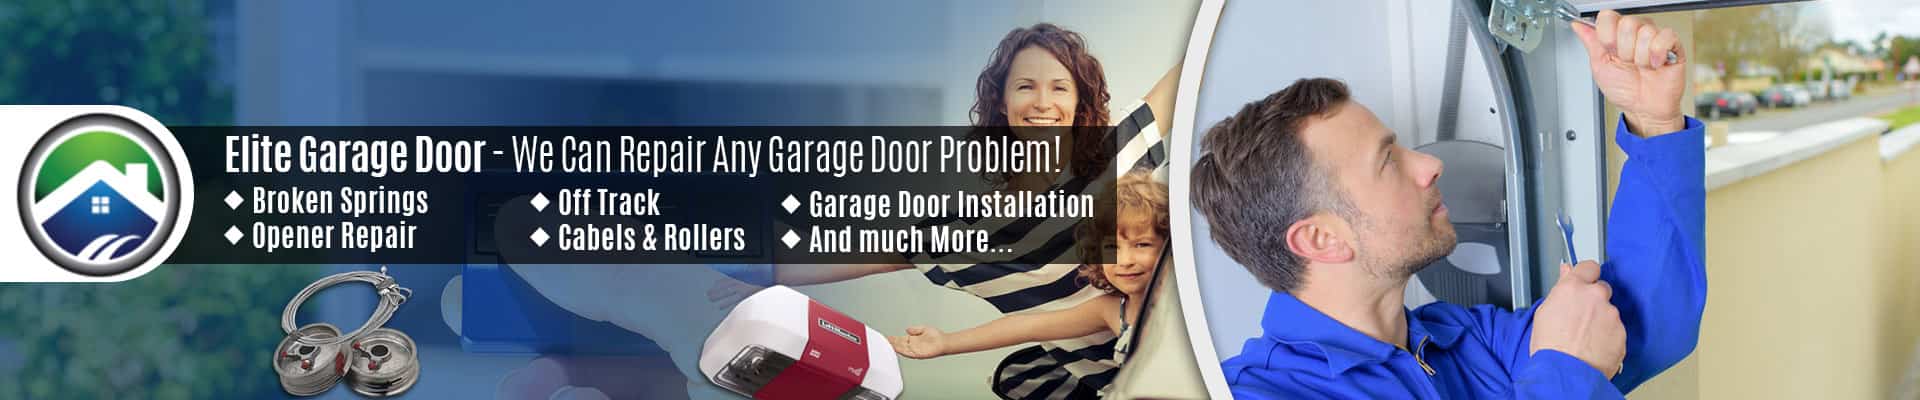 Garage Door Repair Service Arlington – Elite Garage Door of Sedro-Woolley